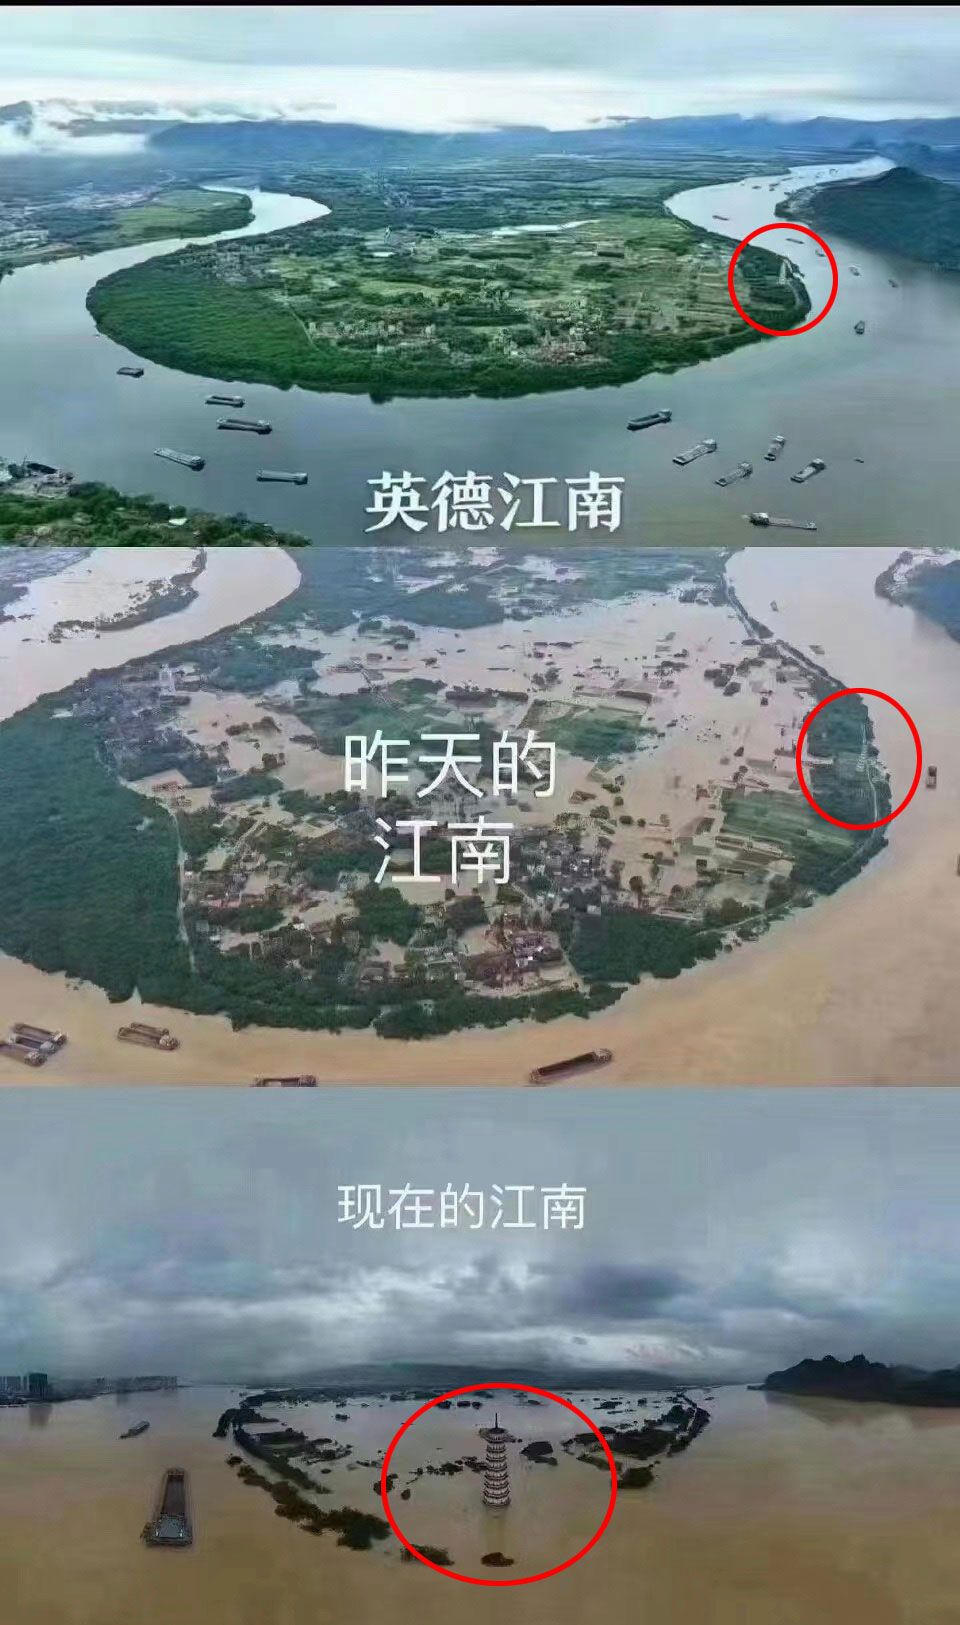 图片显示，英德江南村全村几乎被淹。